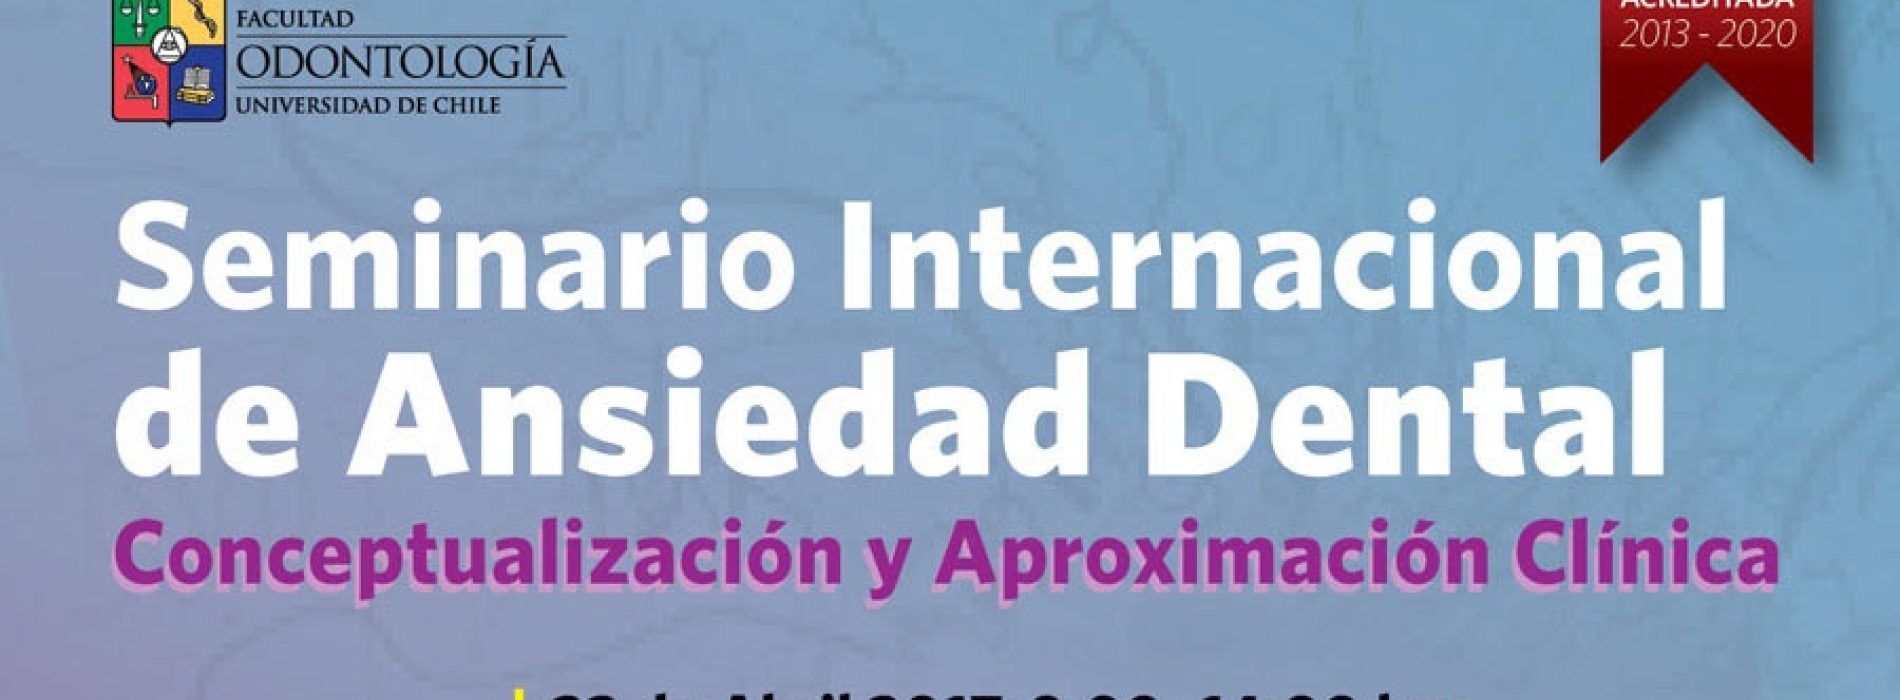 22 de abril de 2017: Seminario Internacional de Ansiedad Dental. U. de Chile